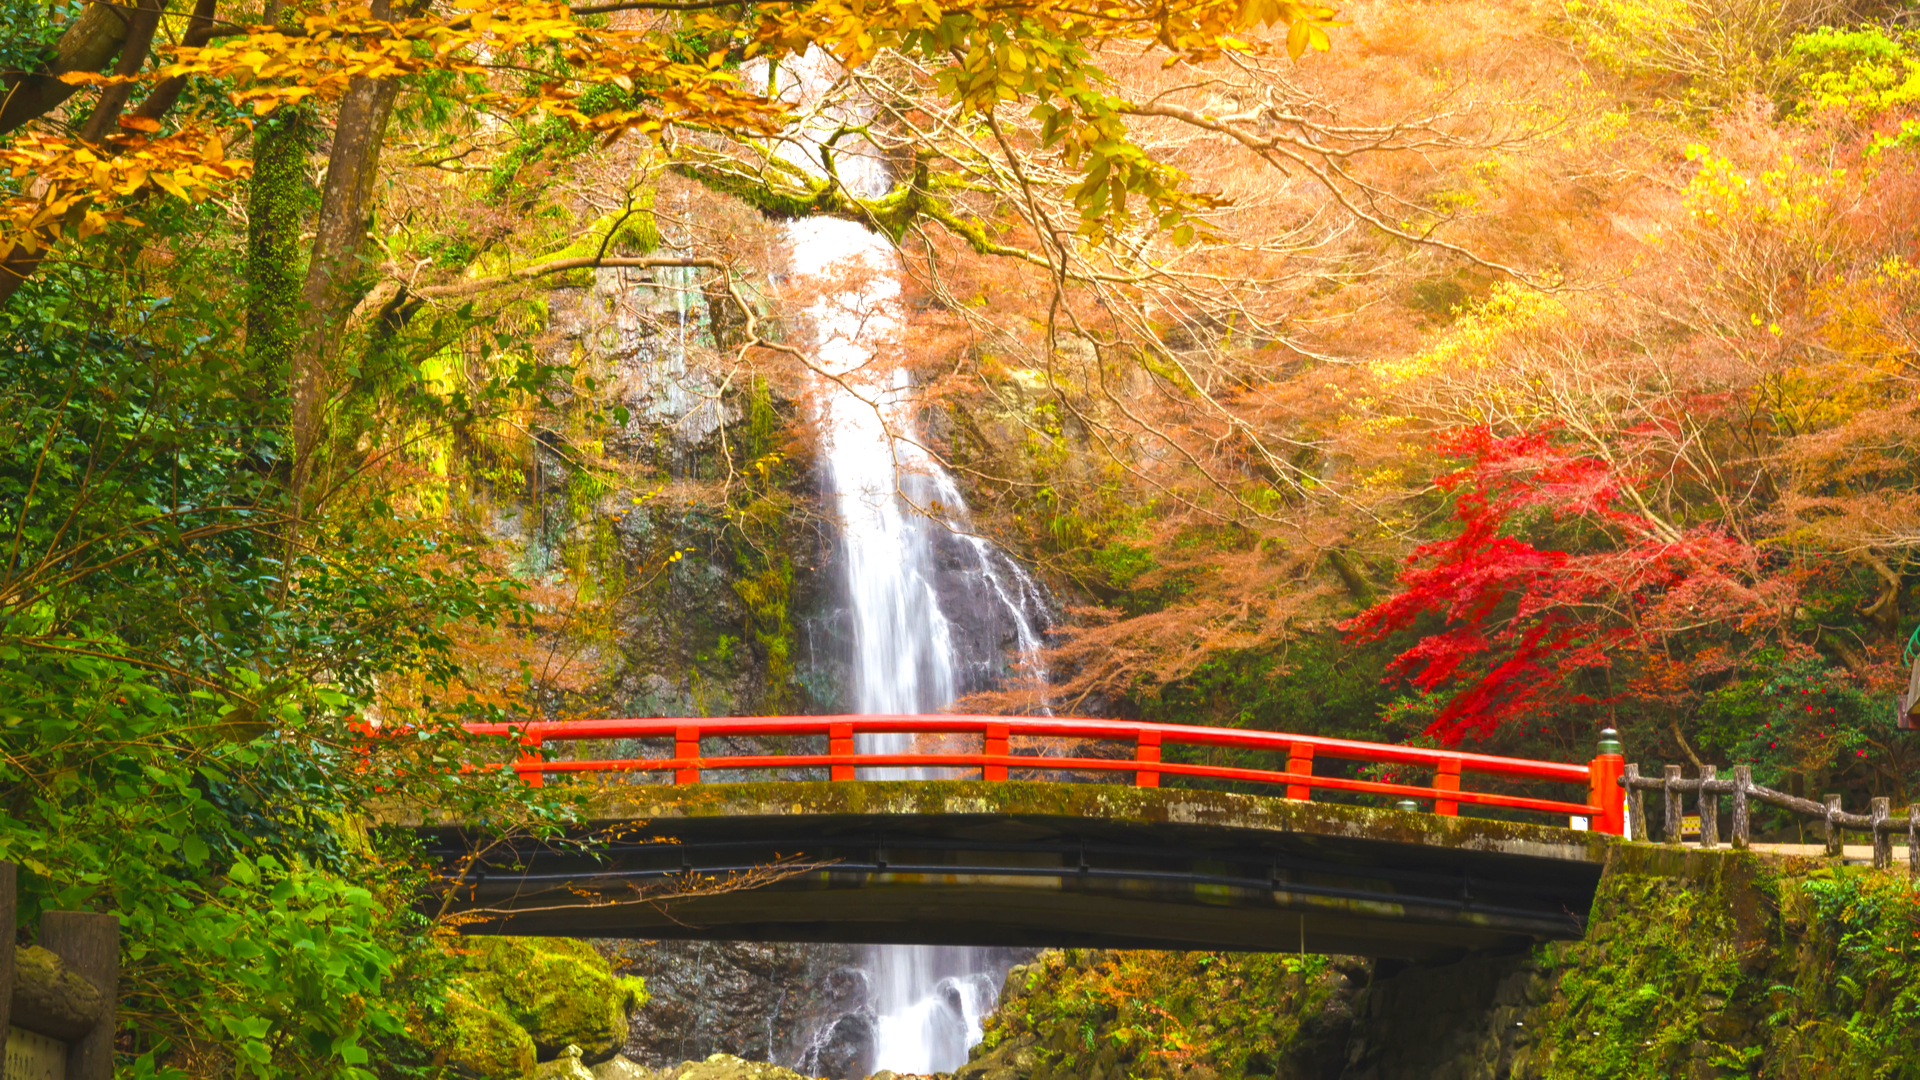 燃えるような秋景色 美しい紅葉を楽しめる絶景の大阪 箕面公園 へ Trip Editor